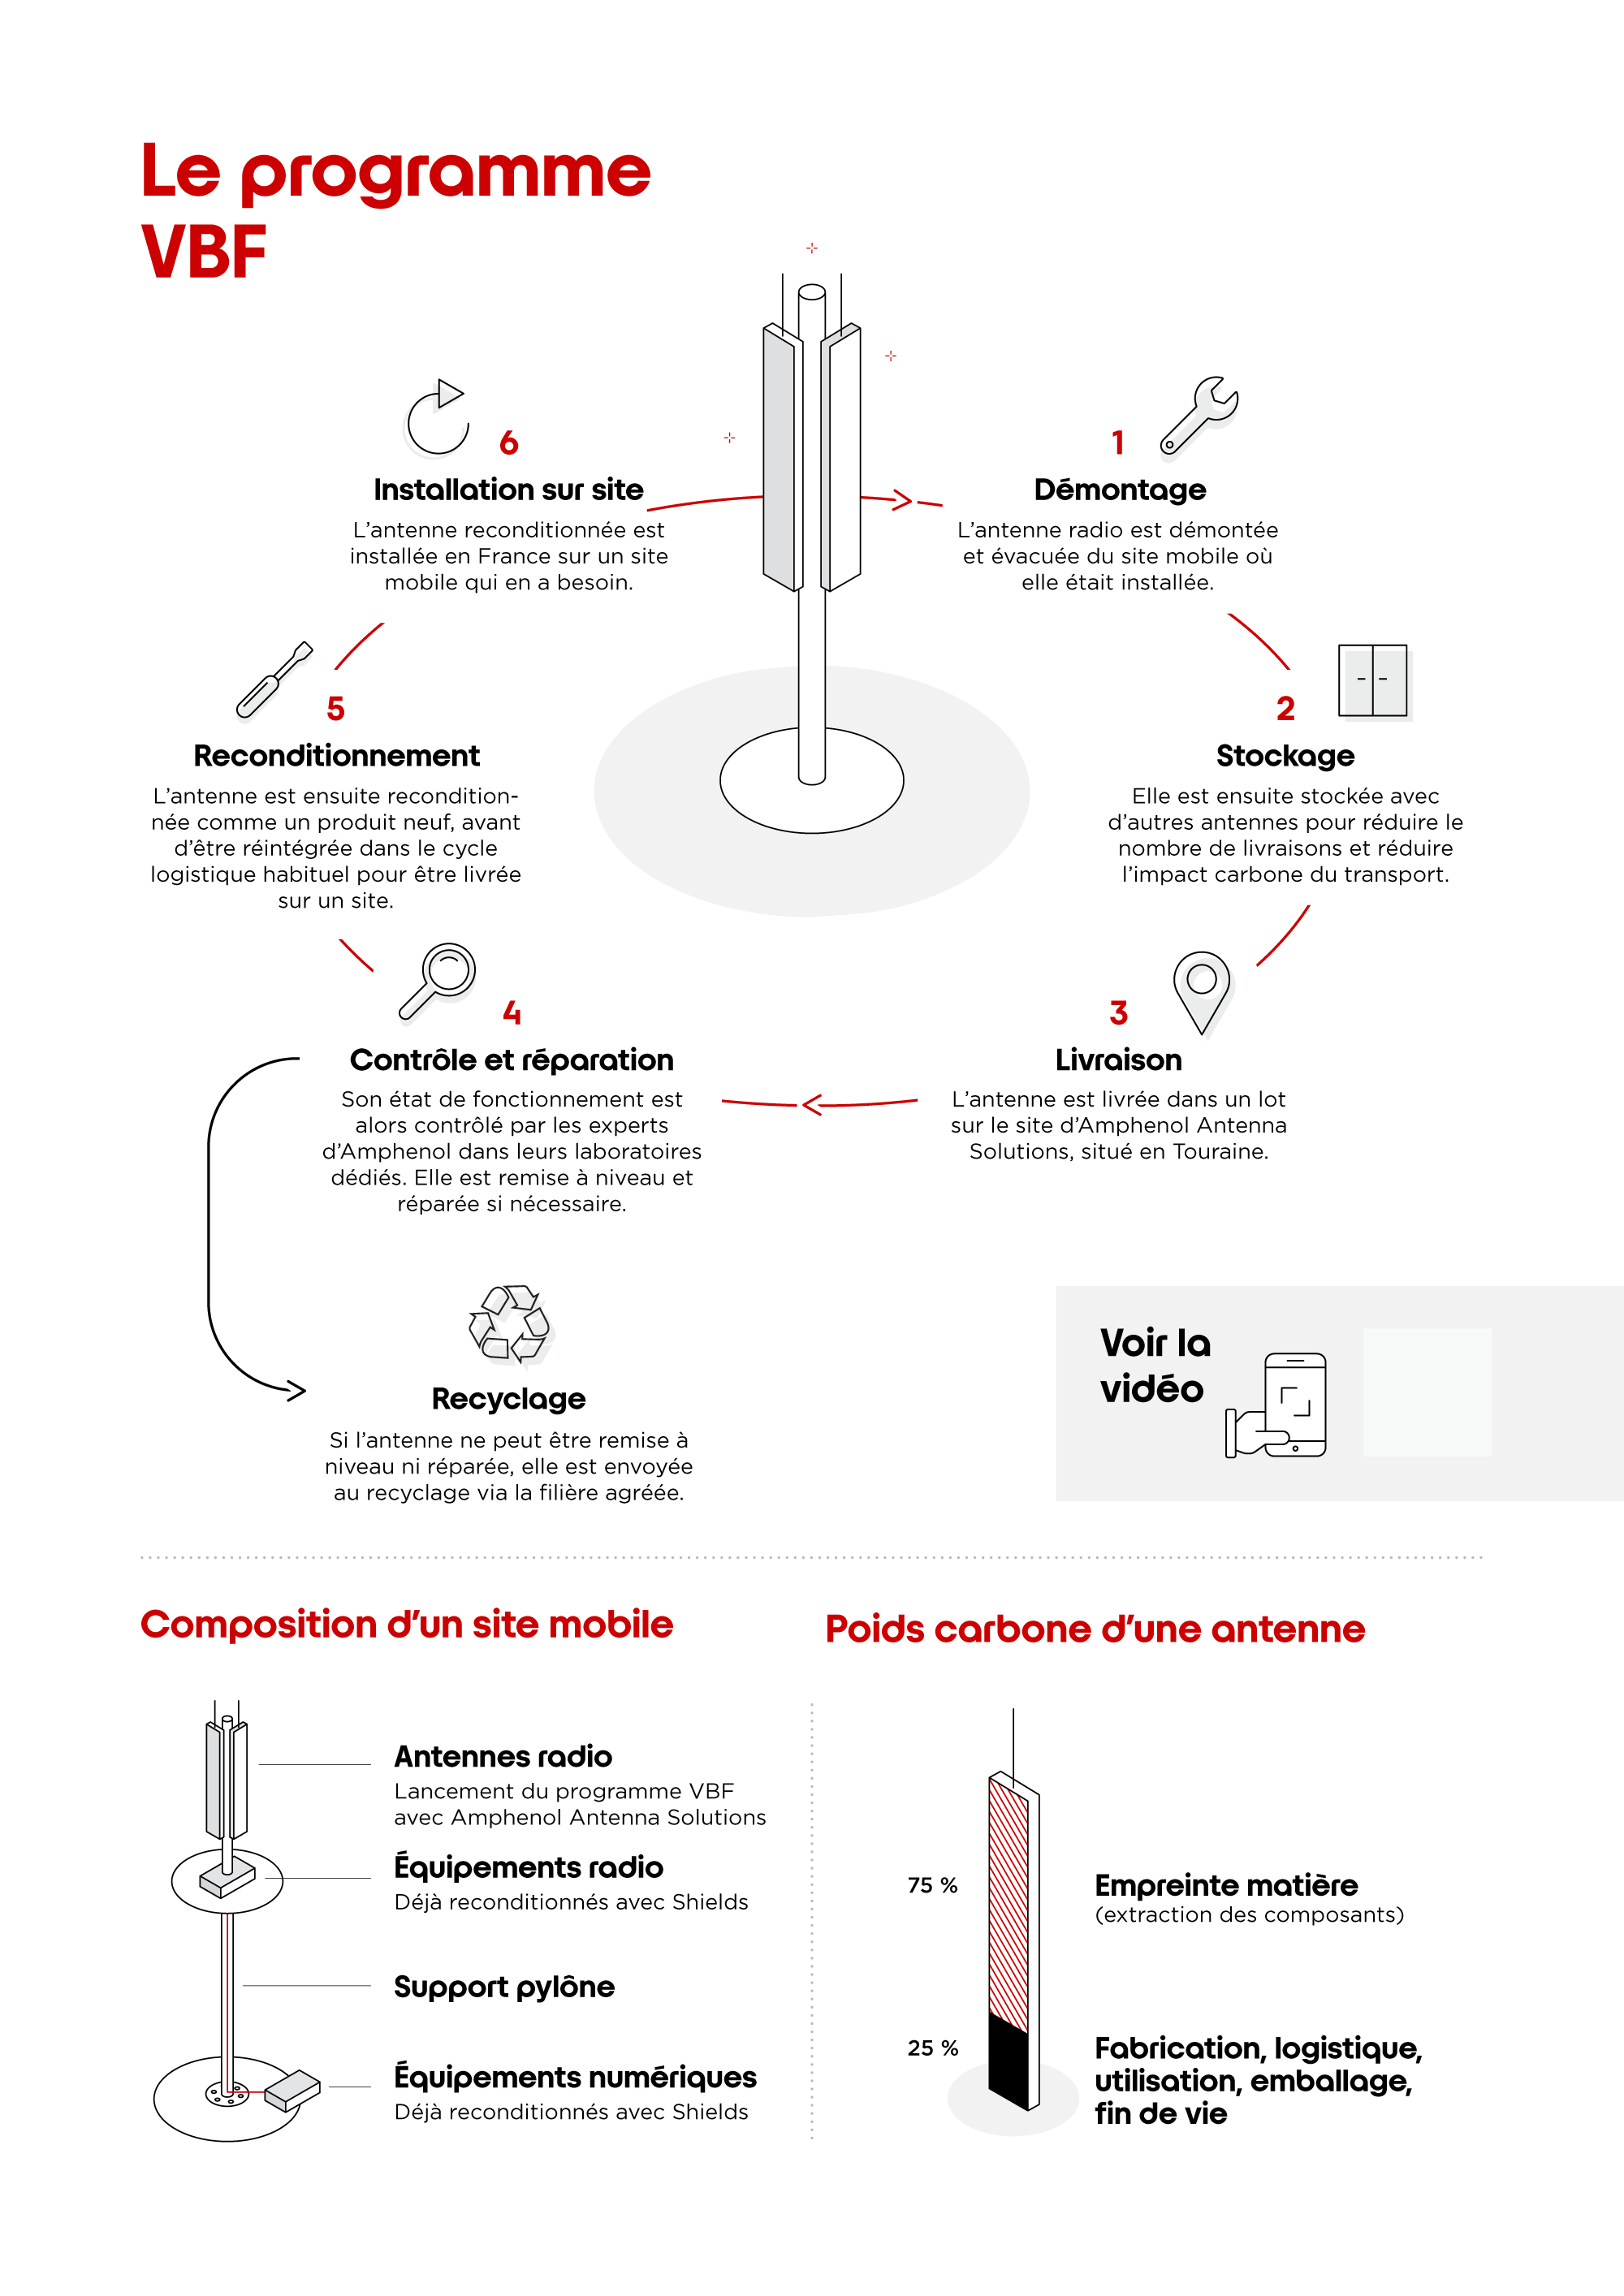 L'économie circulaire de Free en matière d'antennes radio -Démontage, contrôle et réparation, reconditionnement © Infographie ÉCLAIRAGE PUBLIC